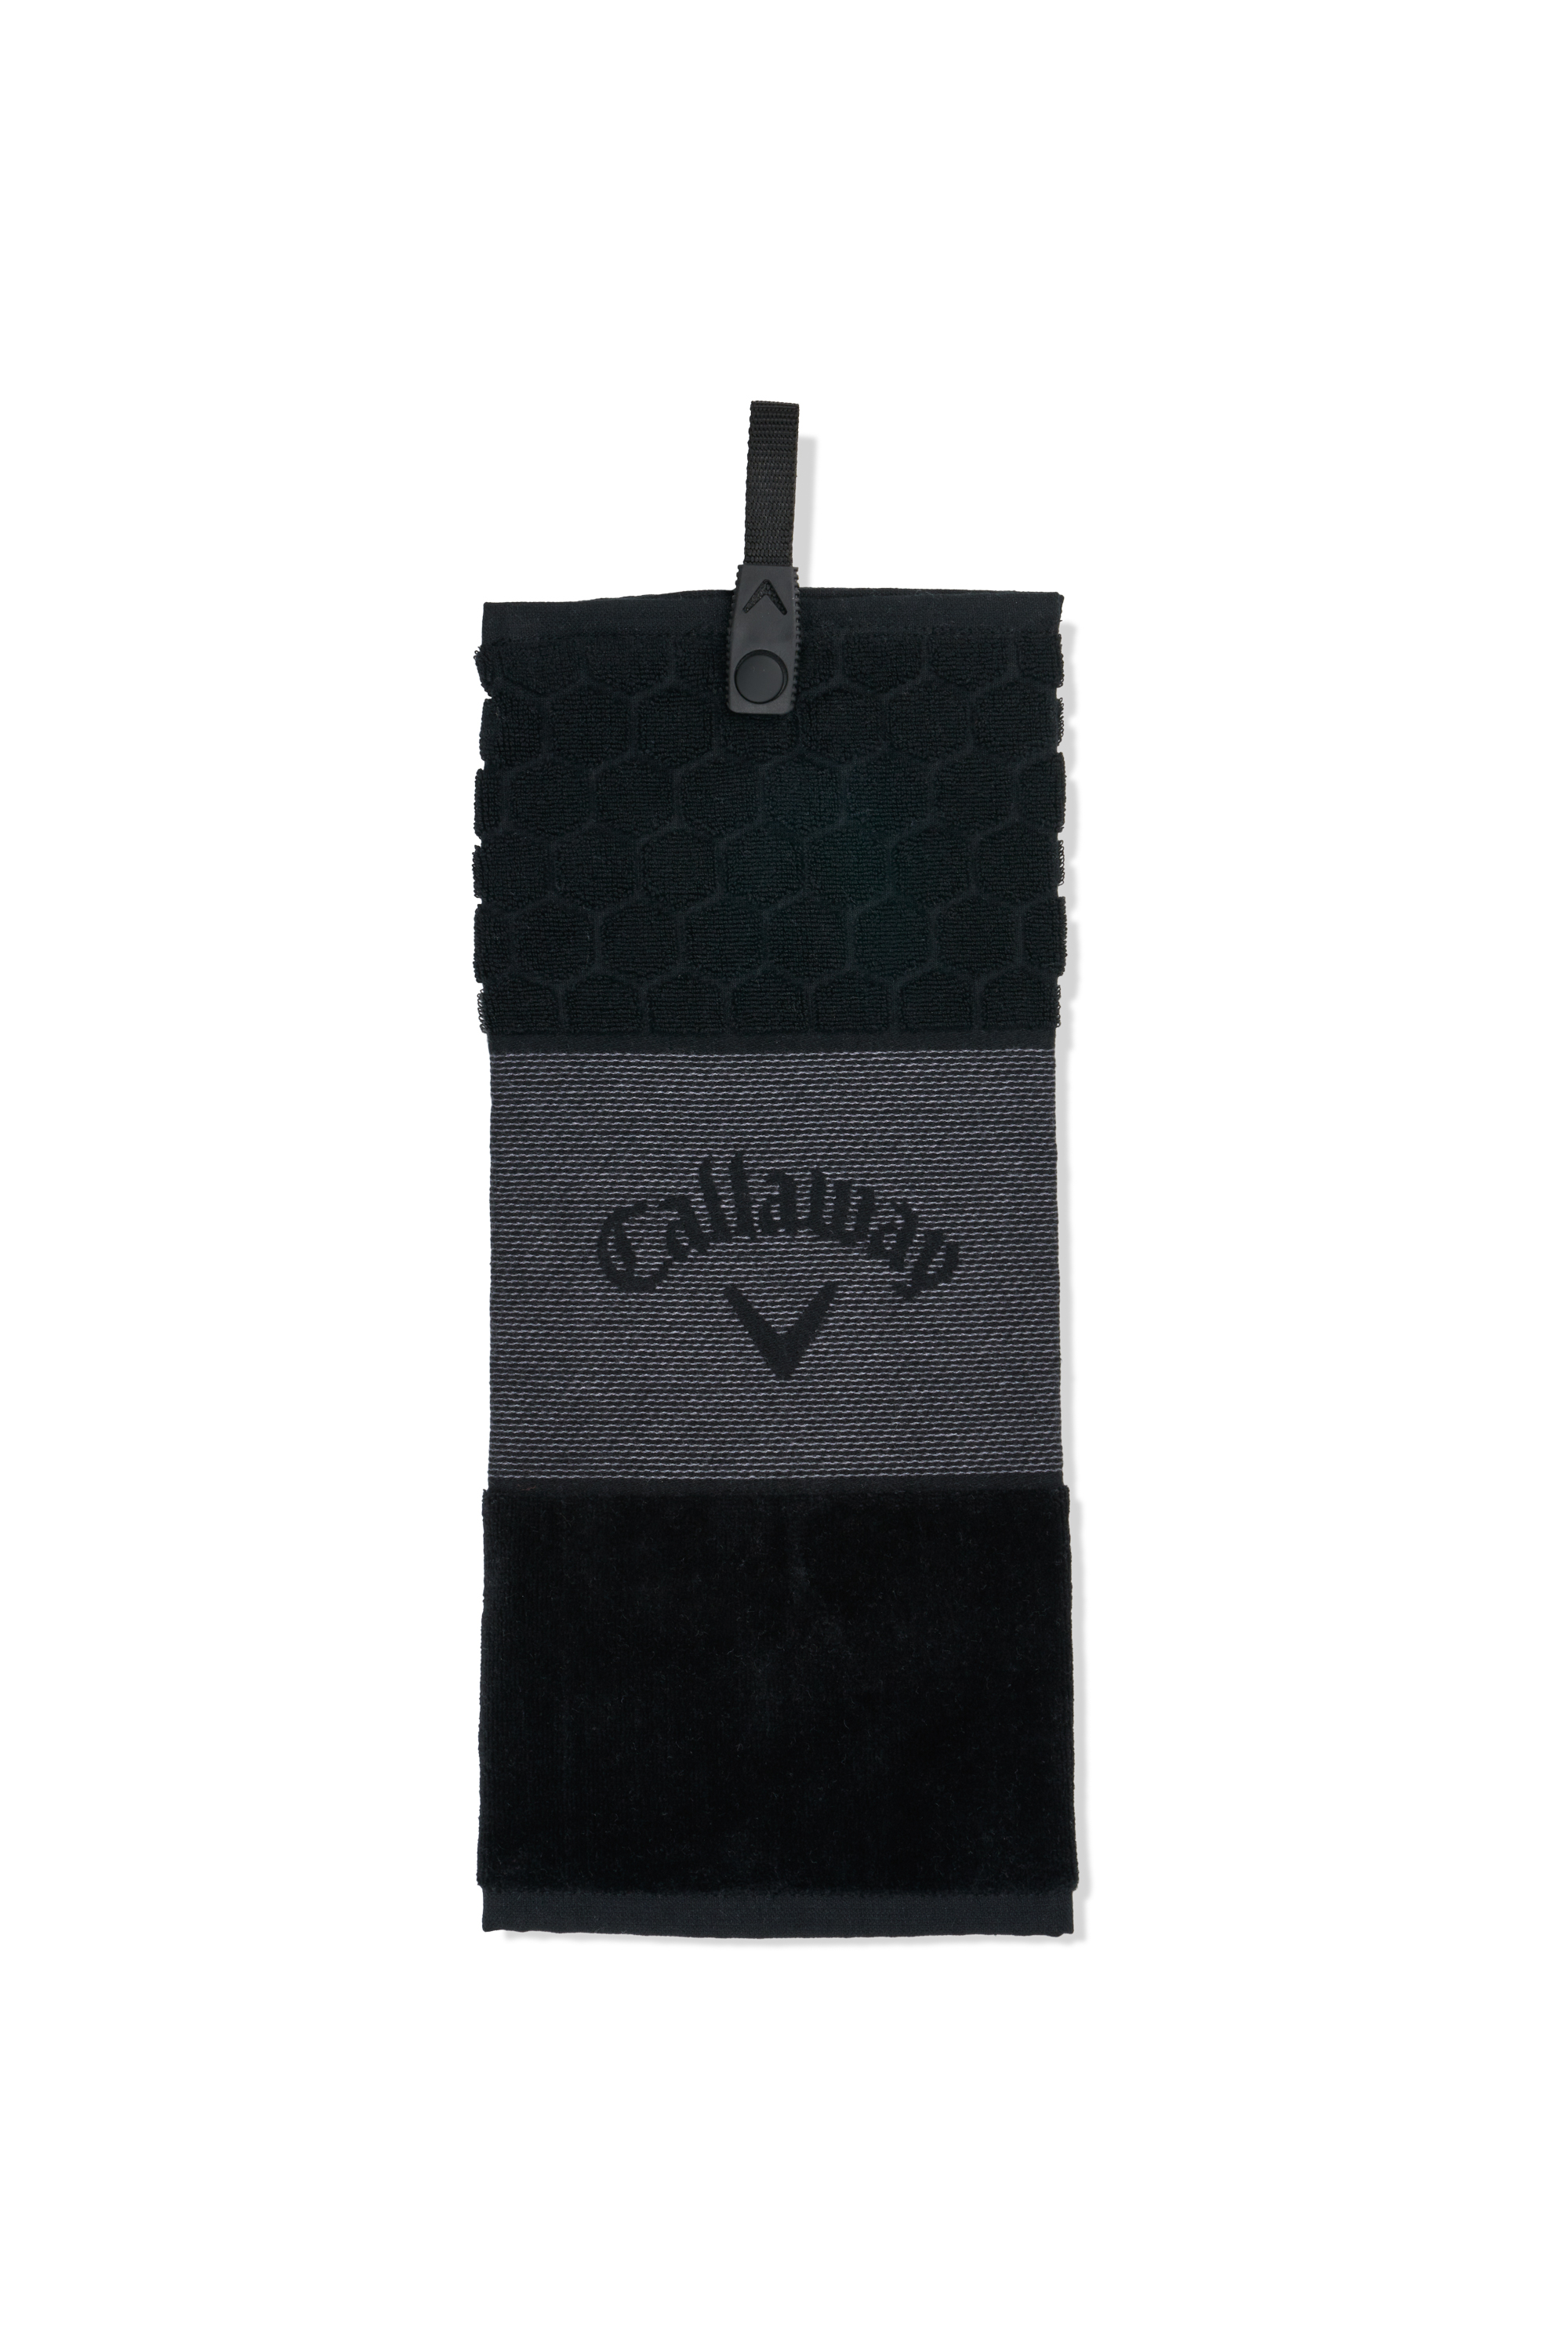 Levně Callaway Tri-Fold 23 golfový ručník, černý/šedý